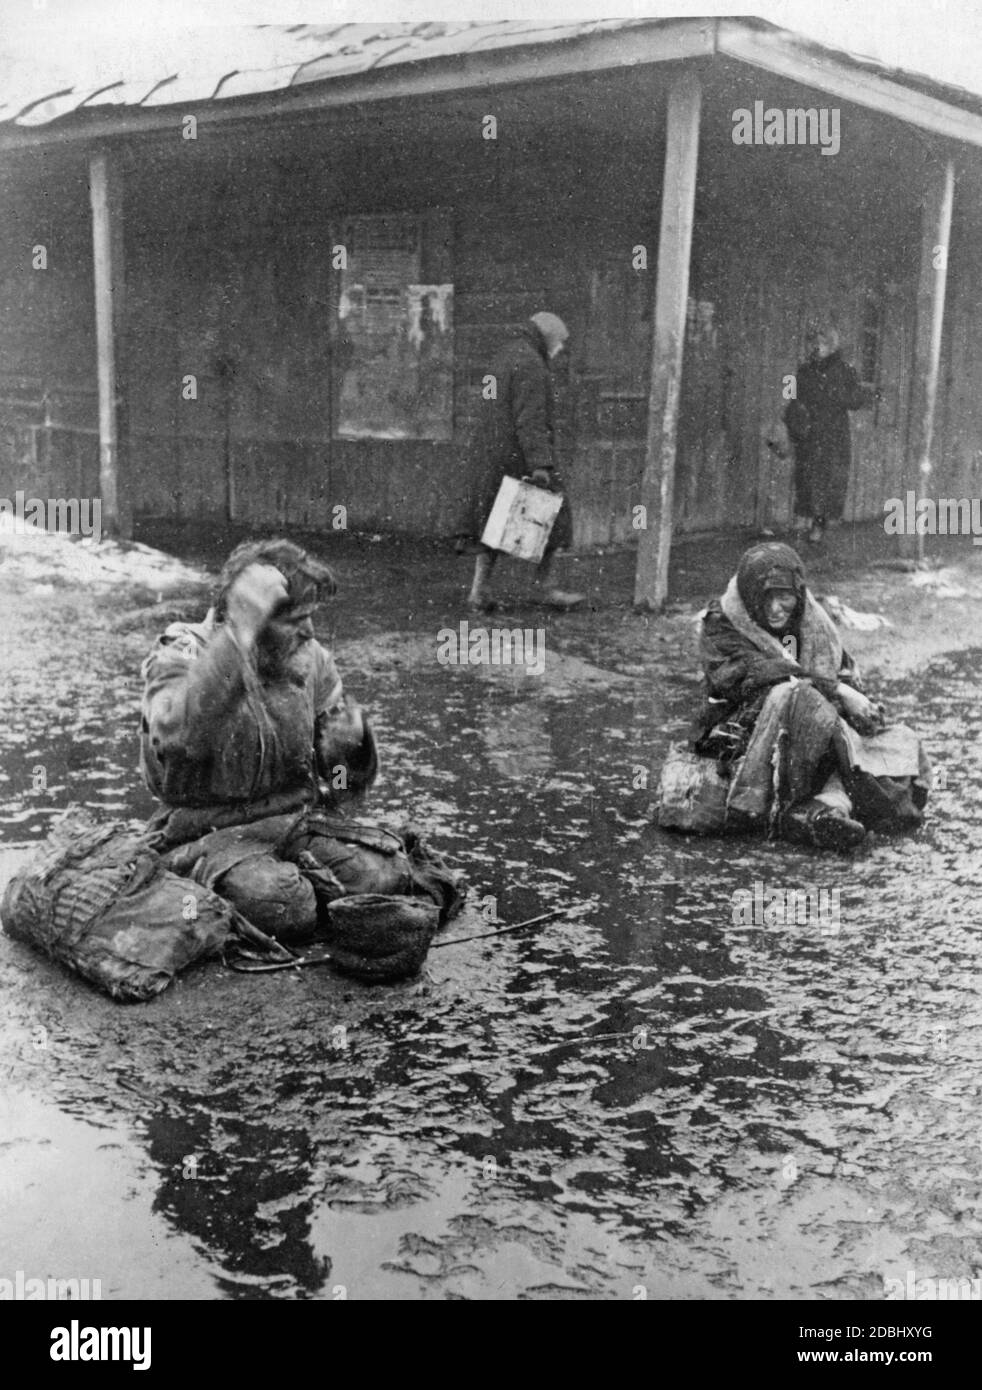 La carestia che si è manifestata nel corso della collettivizzazione forzata ha causato l'impoverimento e la fame di molti contadini sovietici. Qui due agricoltori stanno pregando di mangiare in una stazione ferroviaria nella Repubblica tedesca di Volga. Foto Stock